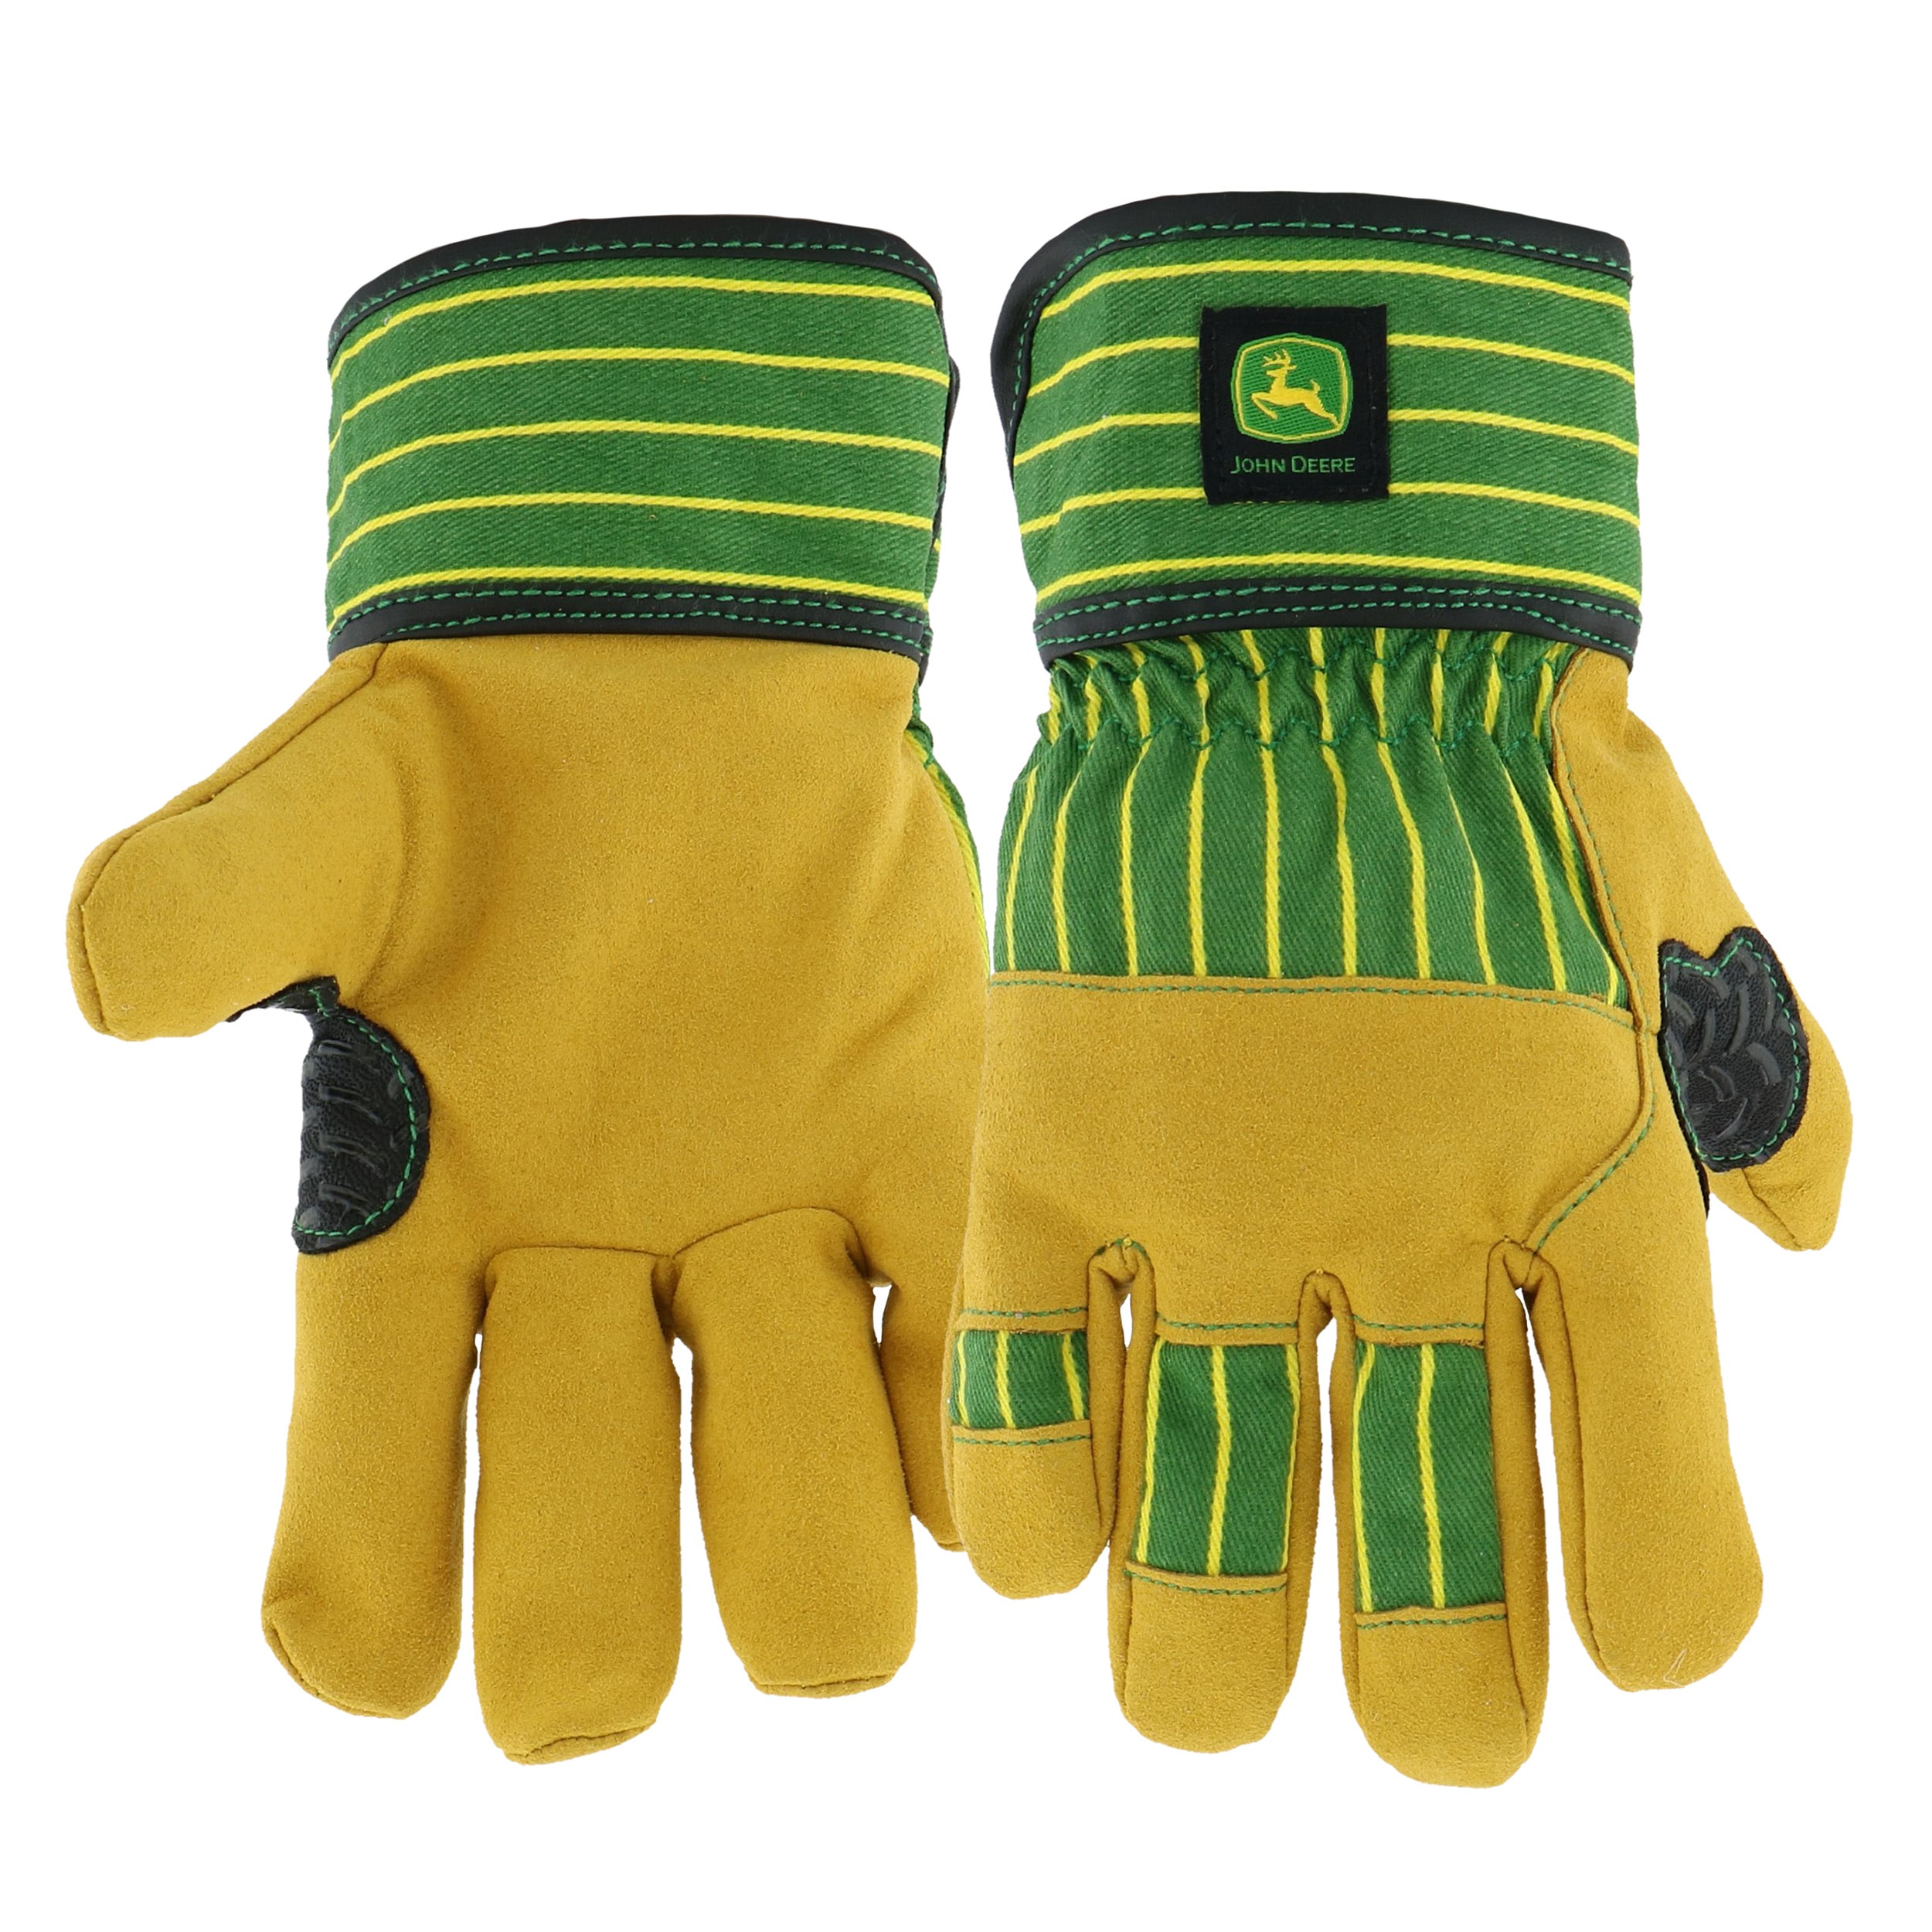 John Deere Work Gloves at